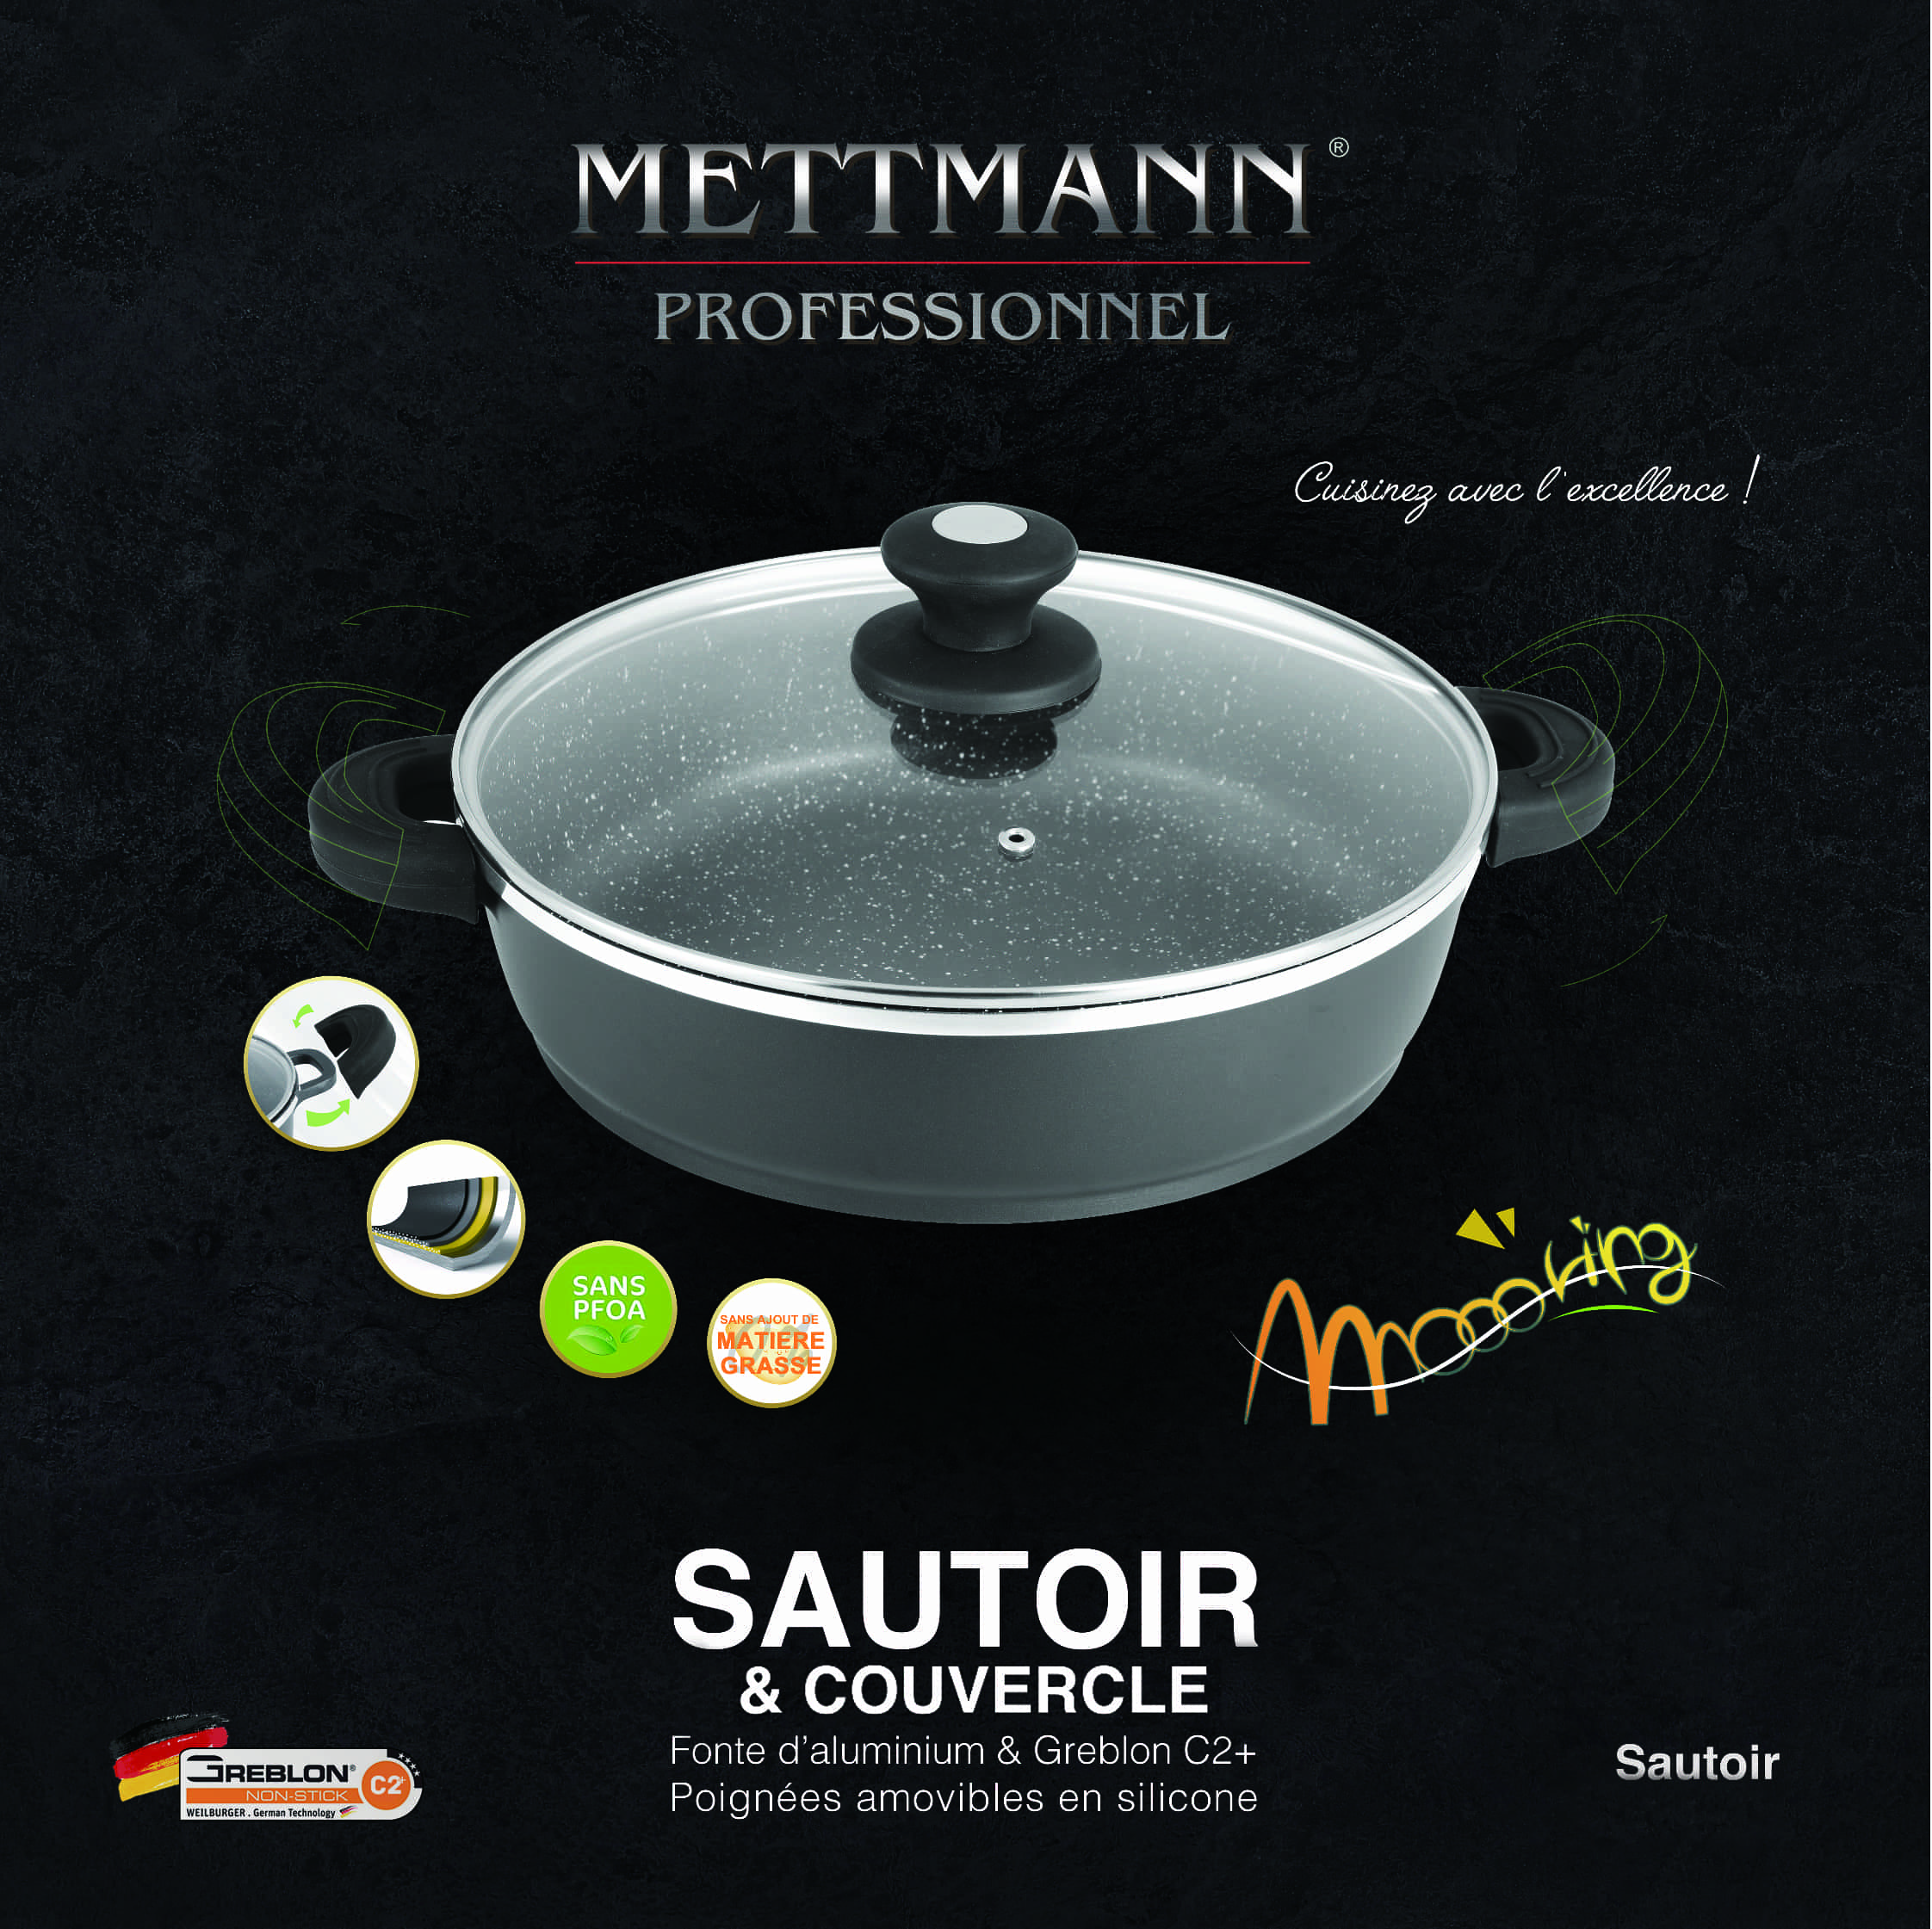 Batterie de cuisine 11 pièces - Mettmann Professionnel VENTE EN LIGNE